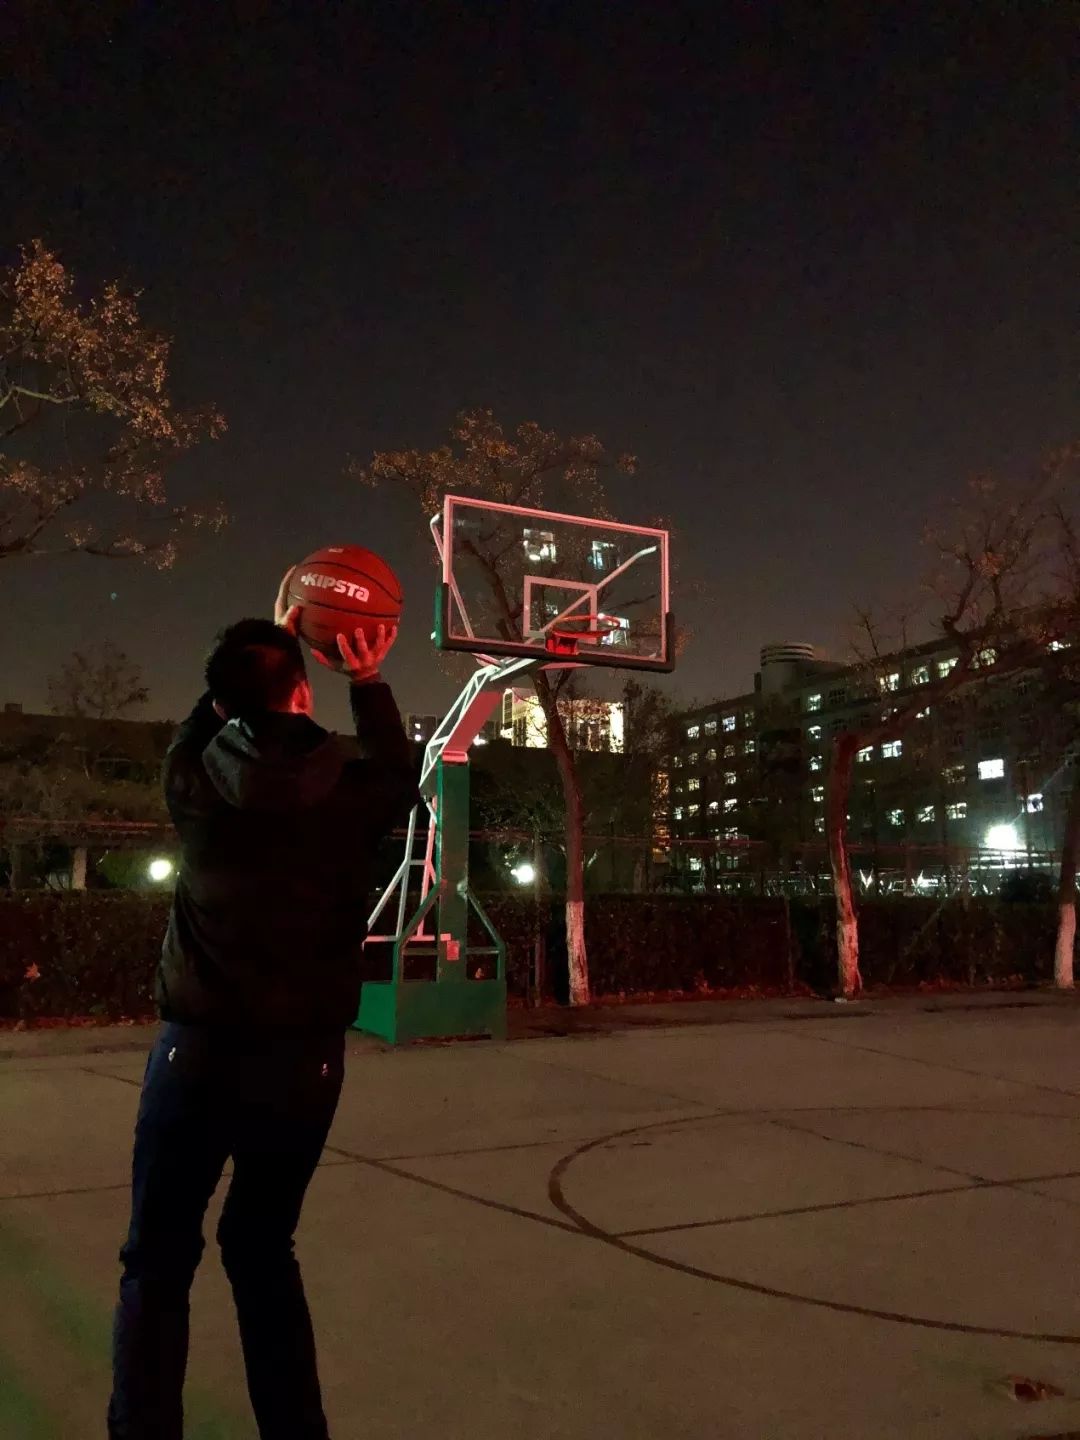 打篮球图片真实晚上图片